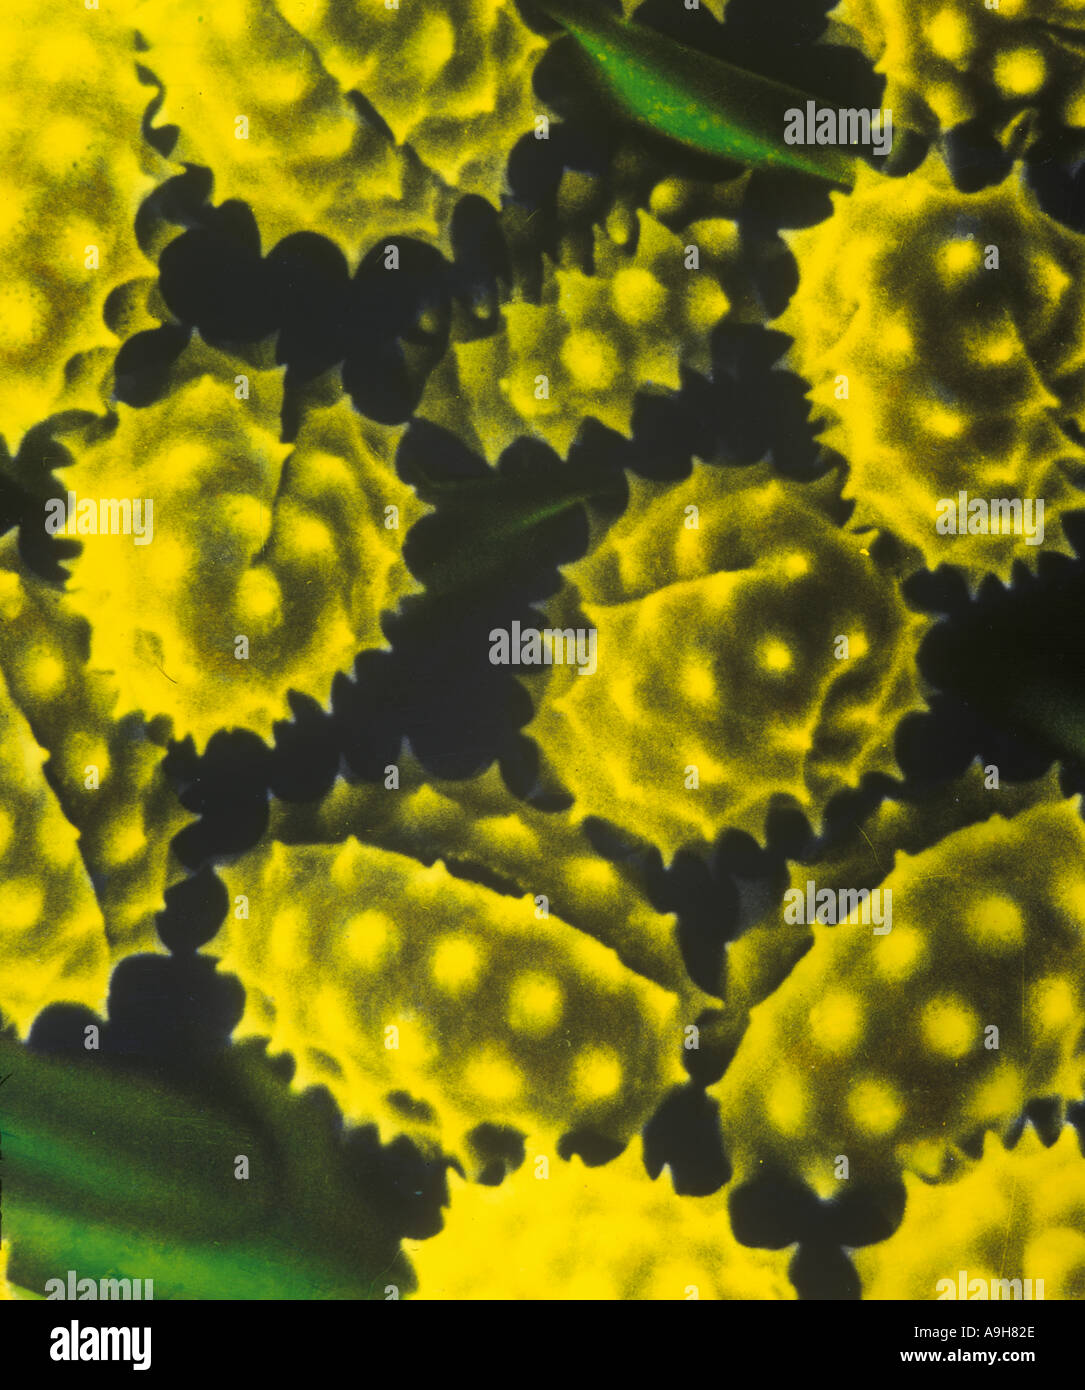 Scientific Micrografia al microscopio elettronico a scansione di erba tossica il polline 1 95 9 28 Foto Stock